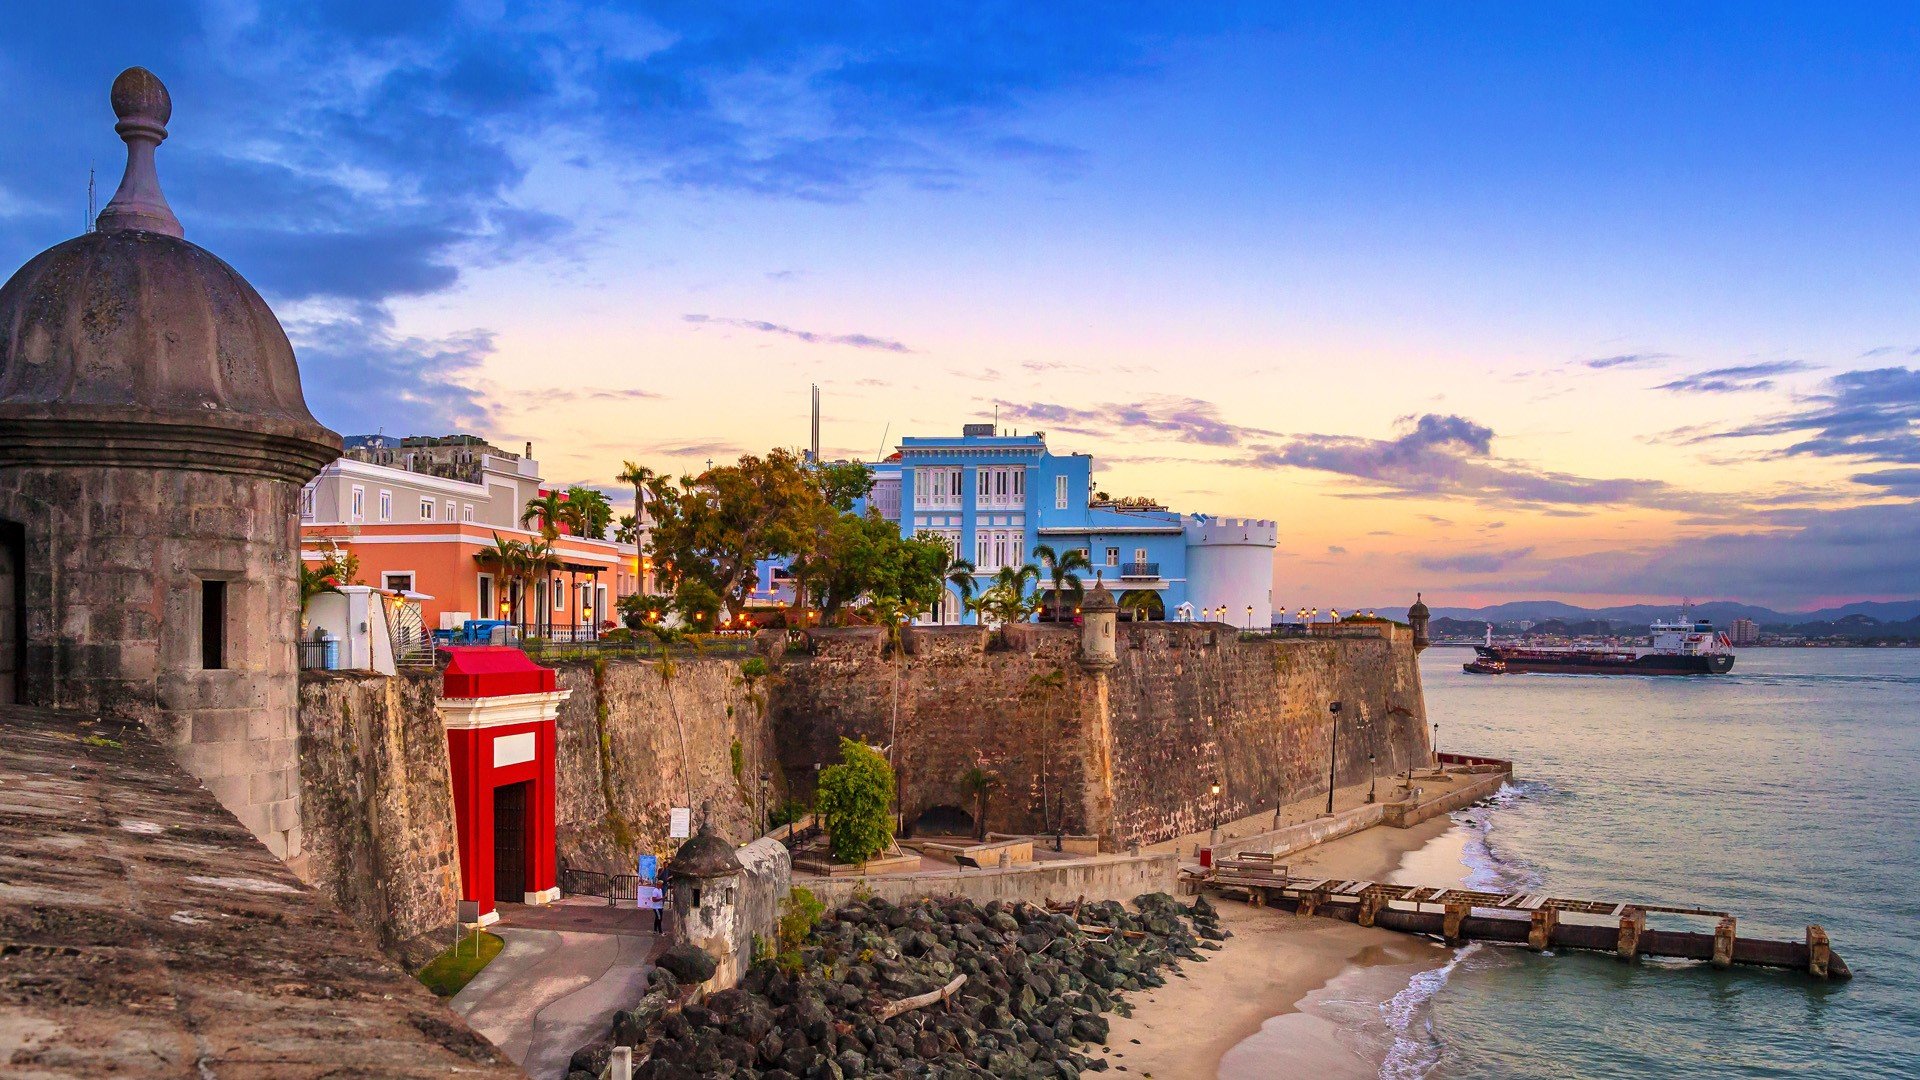 La Puerta de San Juan (The San Juan Gate), Paseo de la Princesa, Old San Juan, Puerto Rico. Windows 10 Spotlight Image